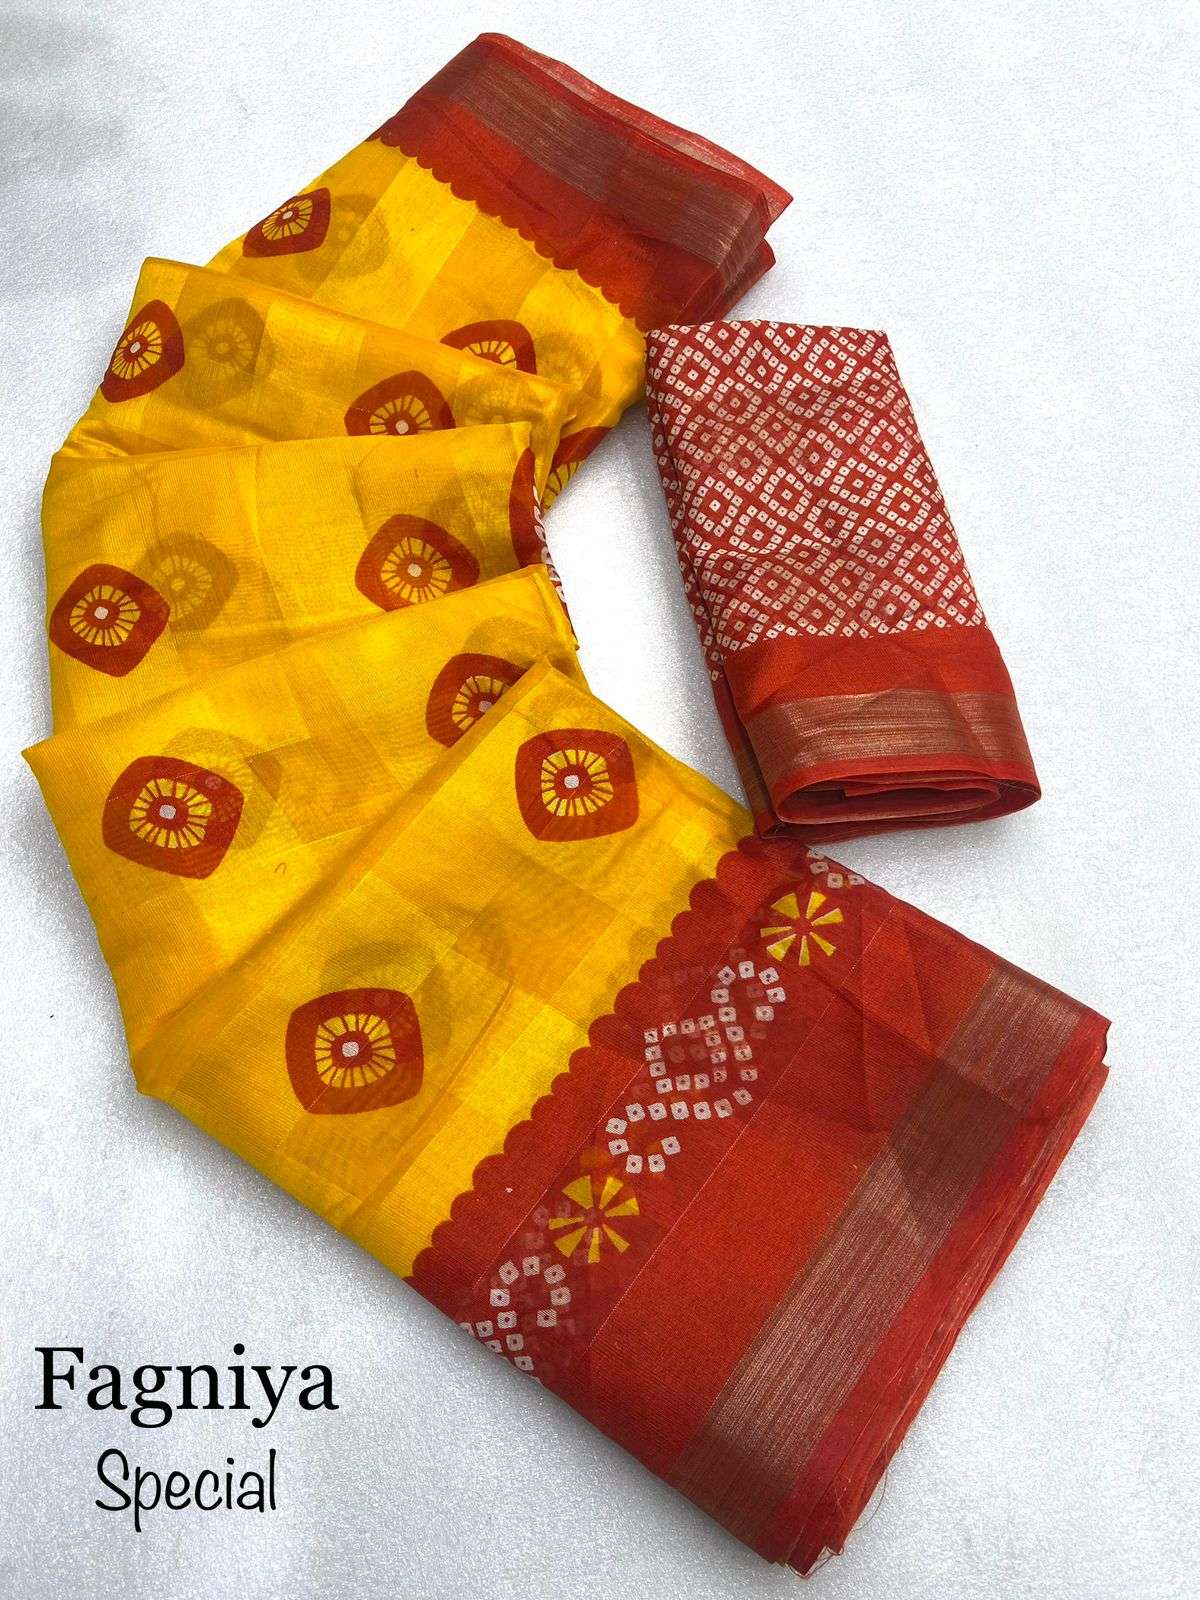 fagniya special saree beautiful kankavati cotton fabric saree with golden zari patta with rich look design running blouse